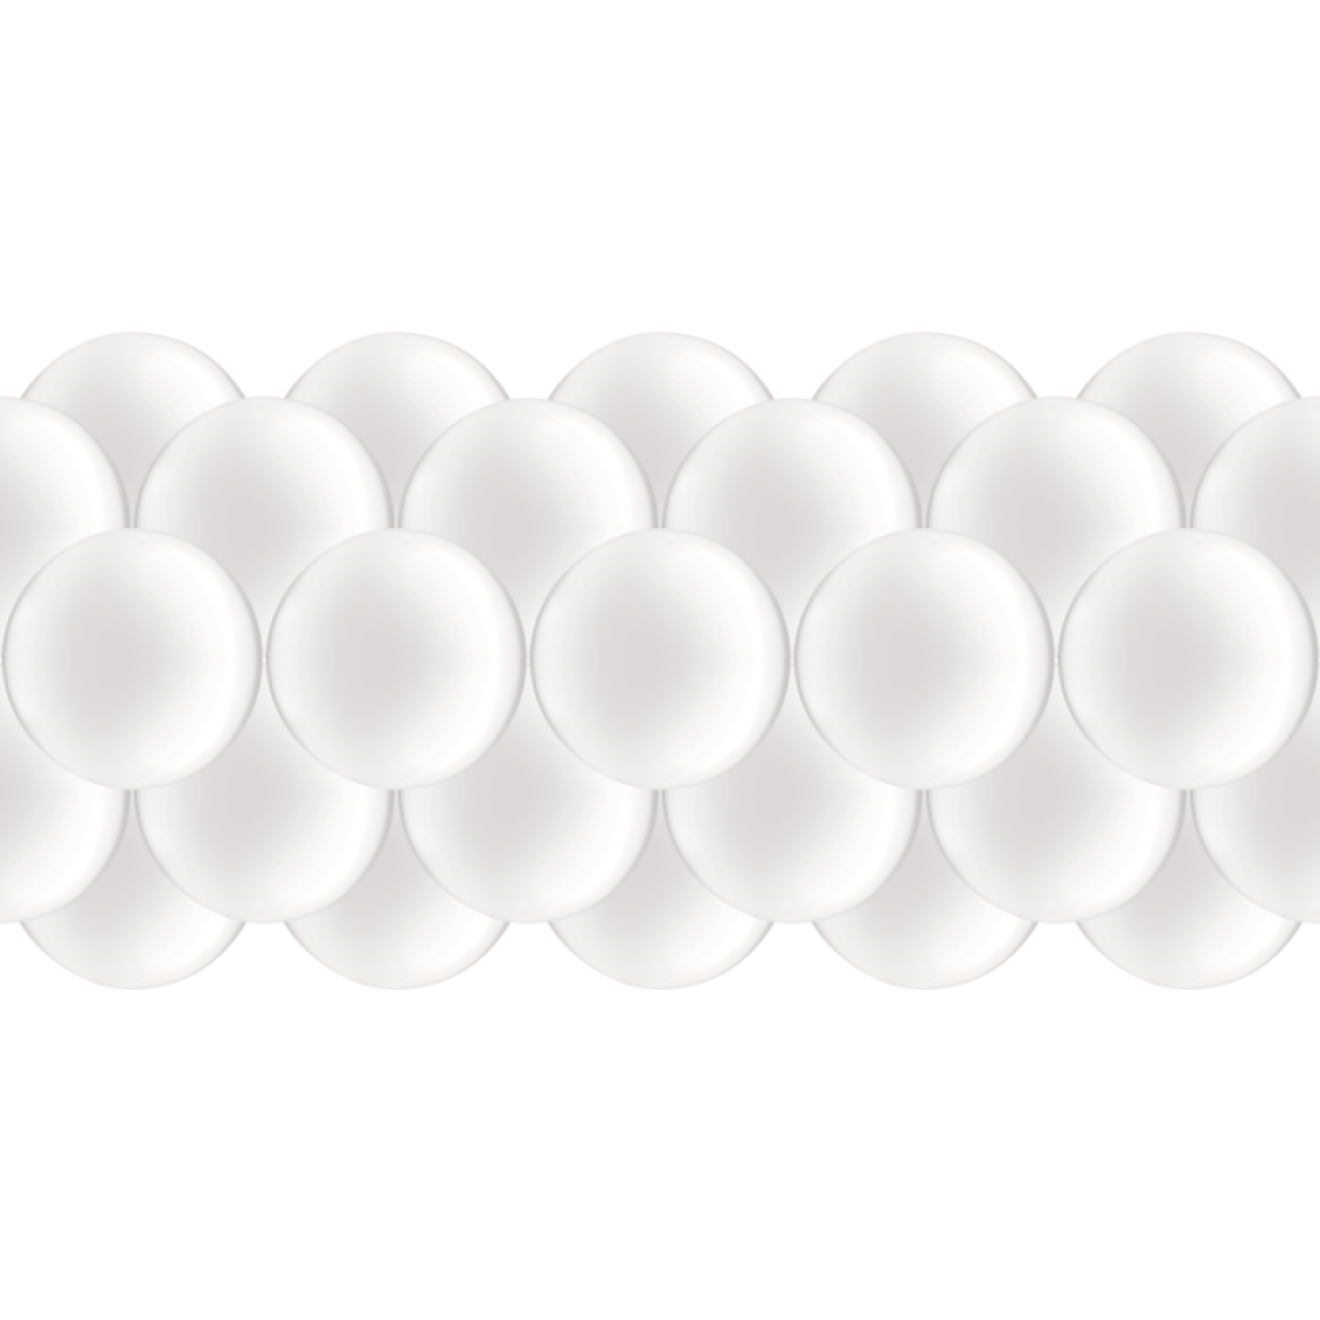 Luftballongirlanden-Set Weiß (Metallic / Glänzend) ab 3 m